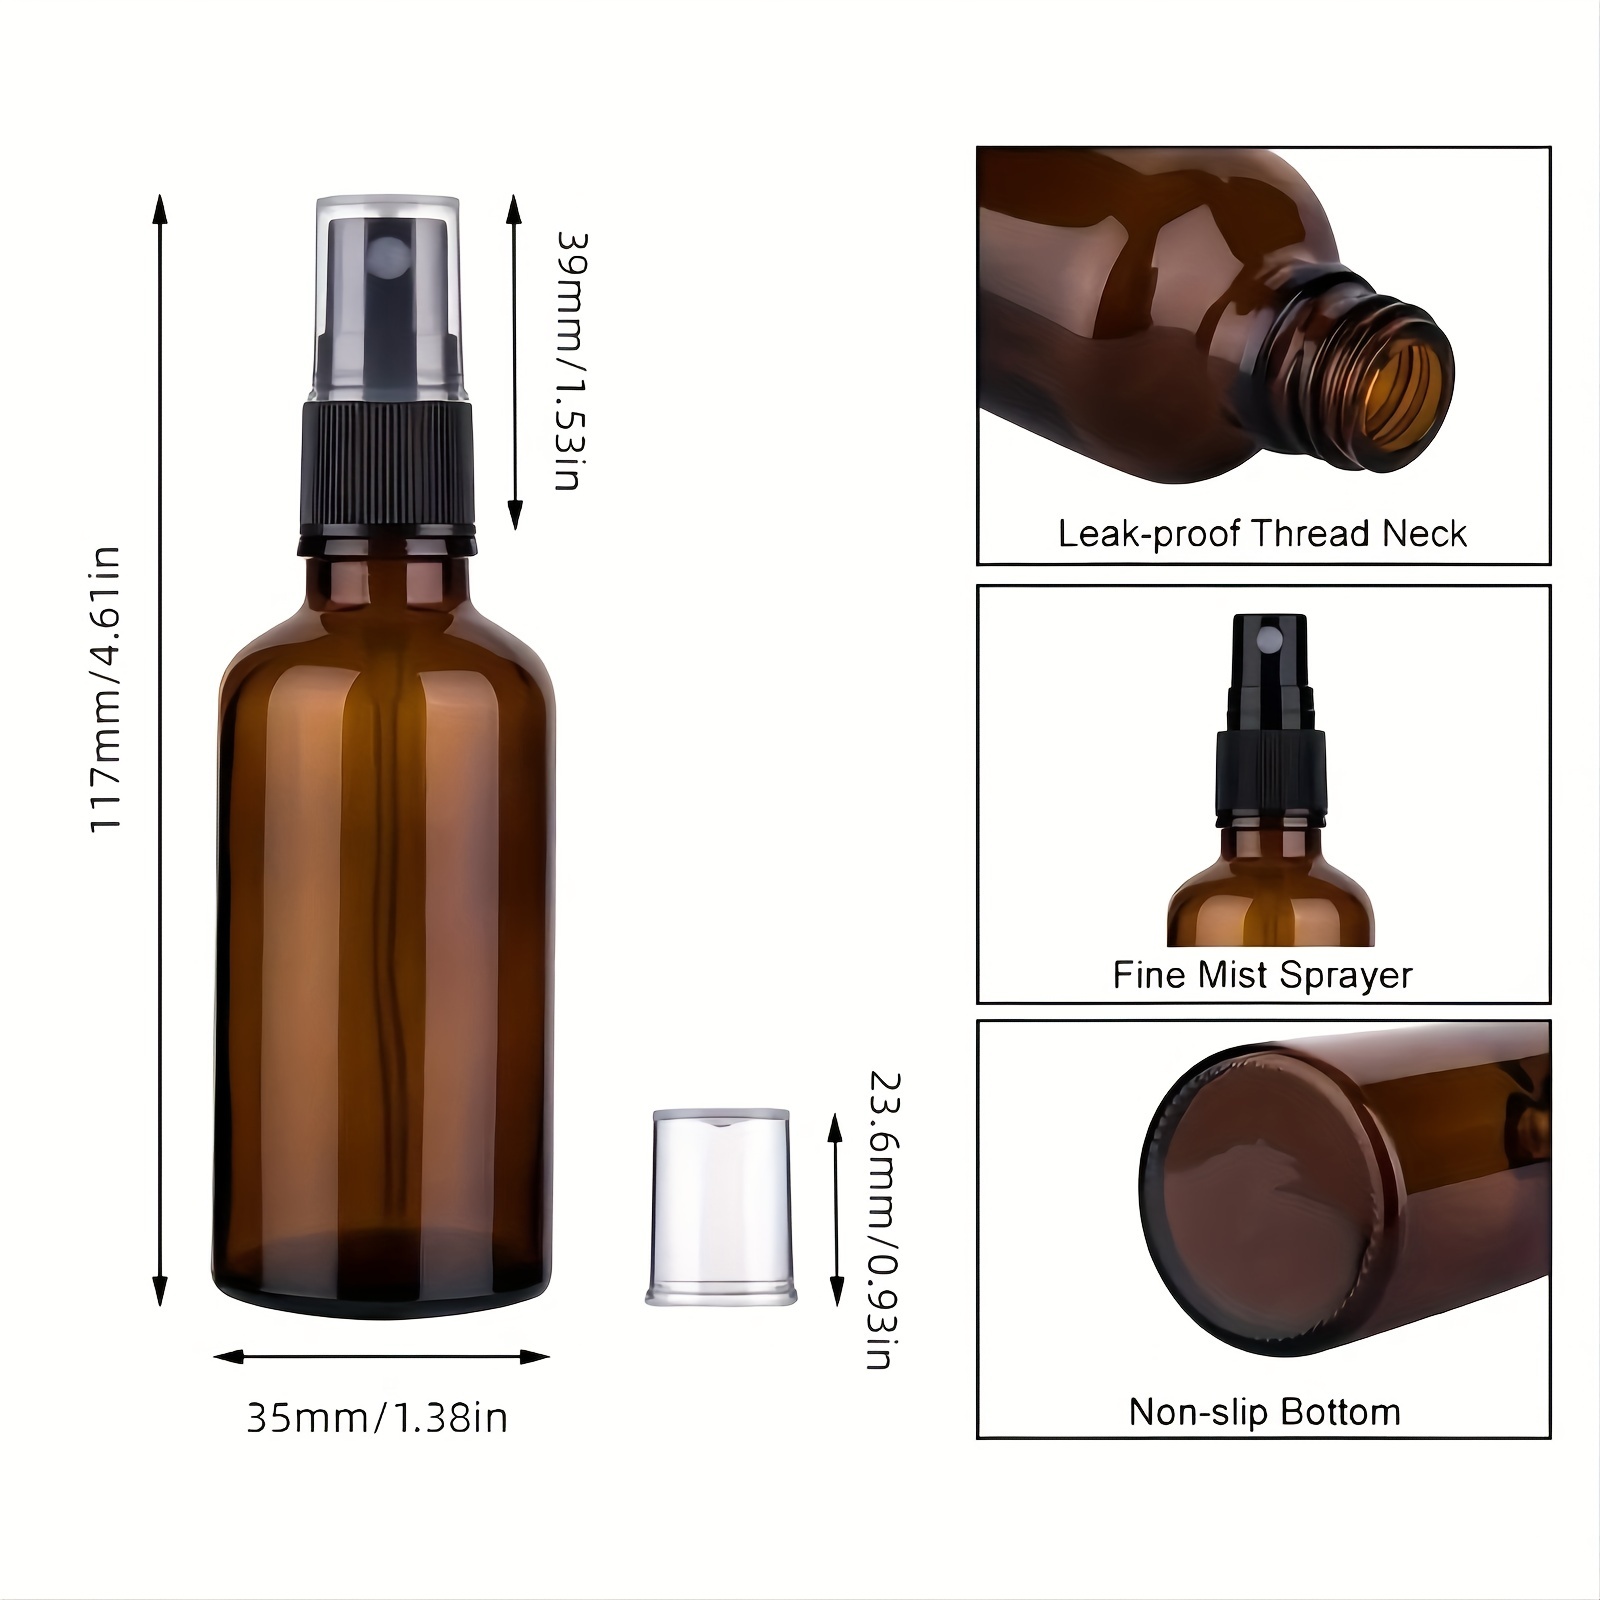 Botella de Vidrio Ámbar con Spray para Limpieza